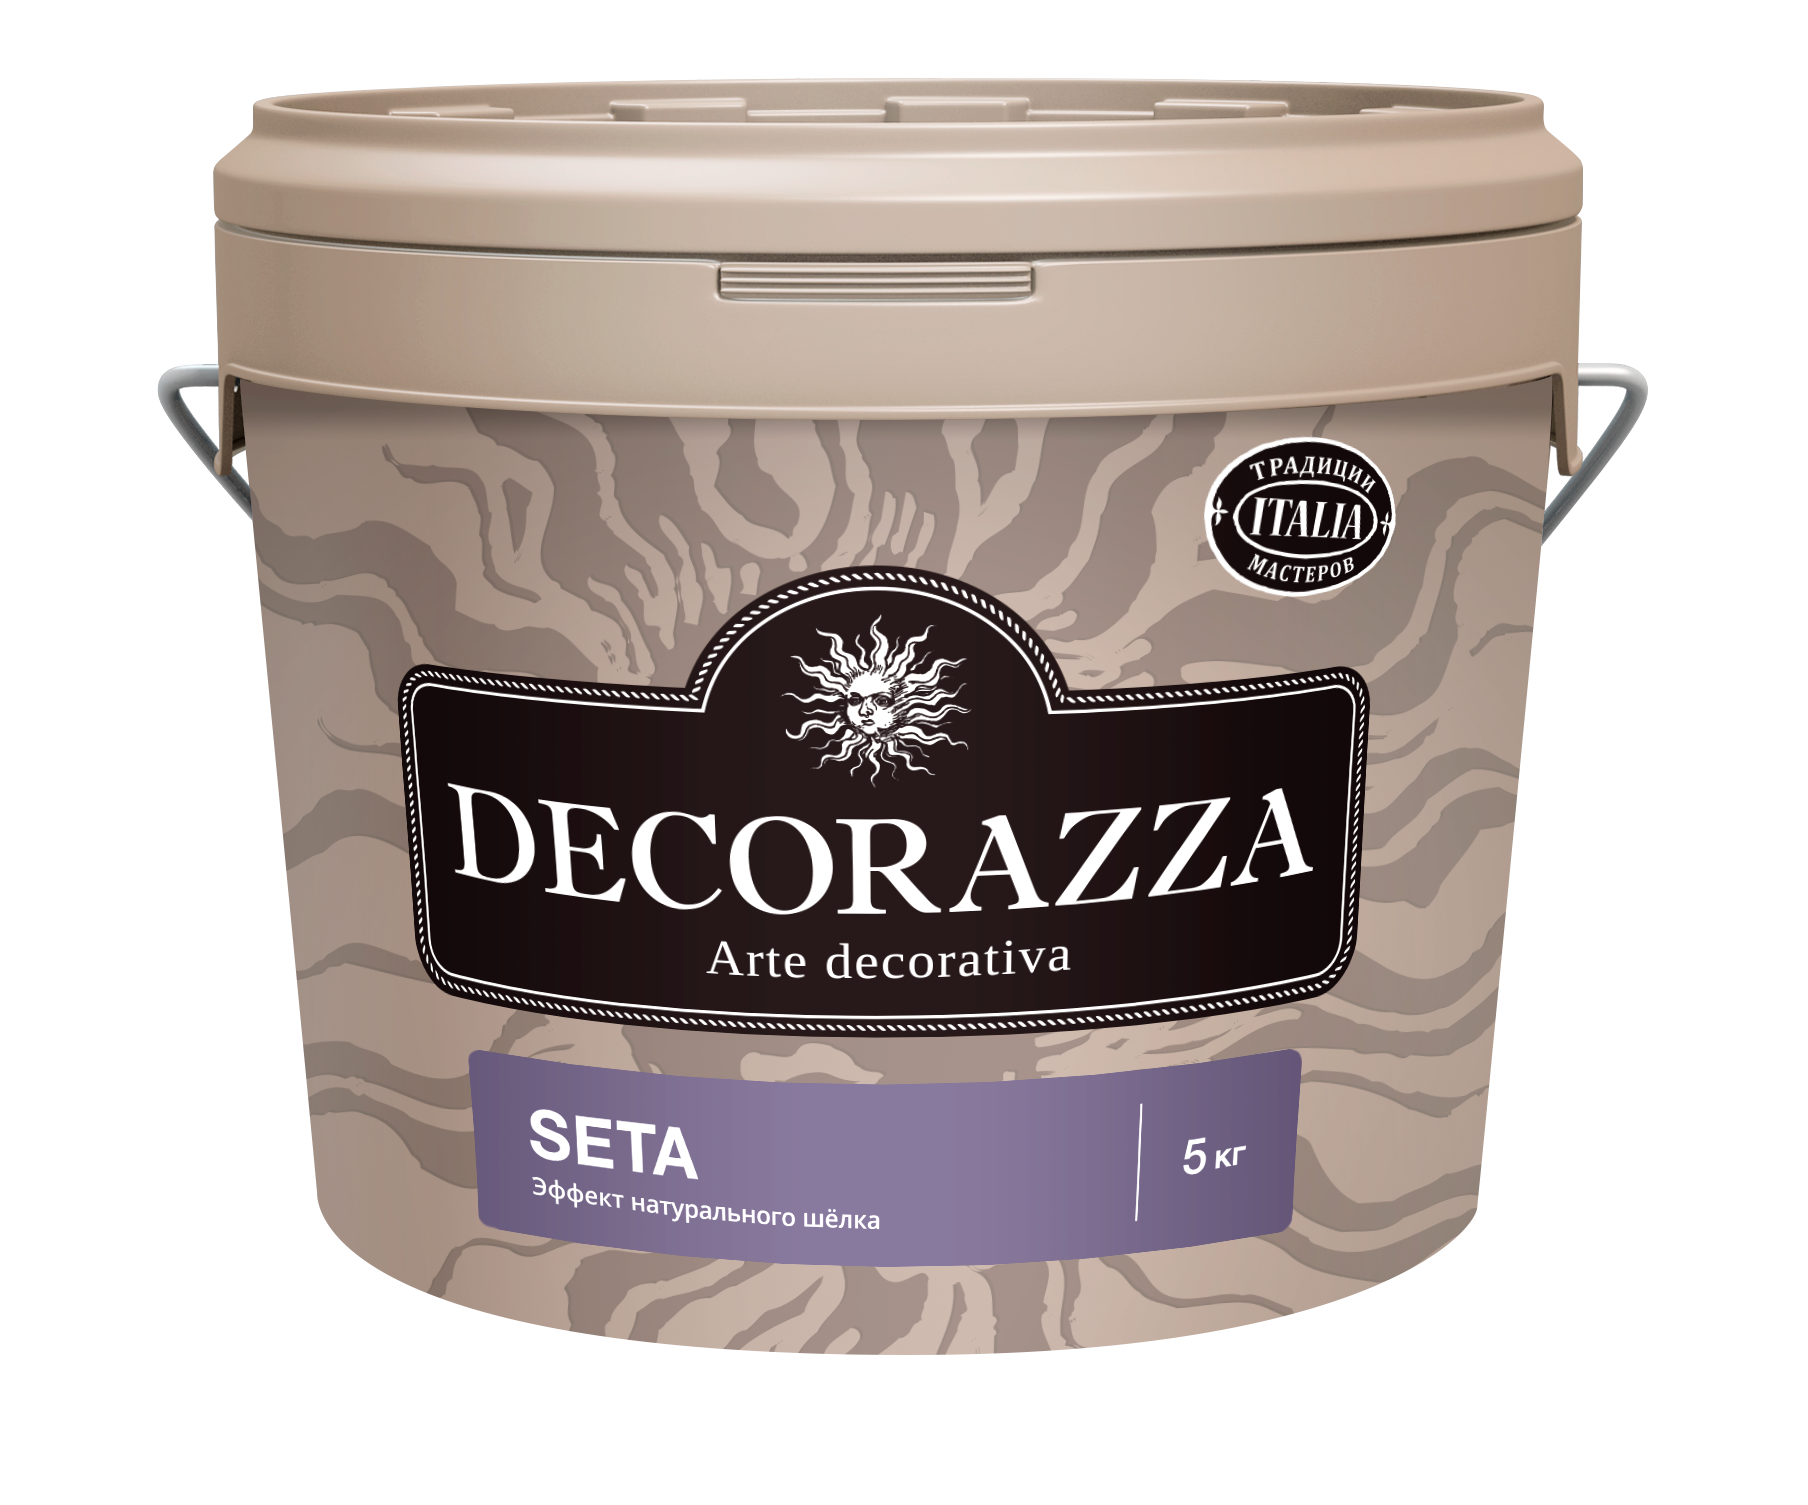 Декоративная штукатурка Decorazza Seta Argento ST 001, серебро, 5 кг декоративная штукатурка decorazza seta argento st 001 серебро 5 кг